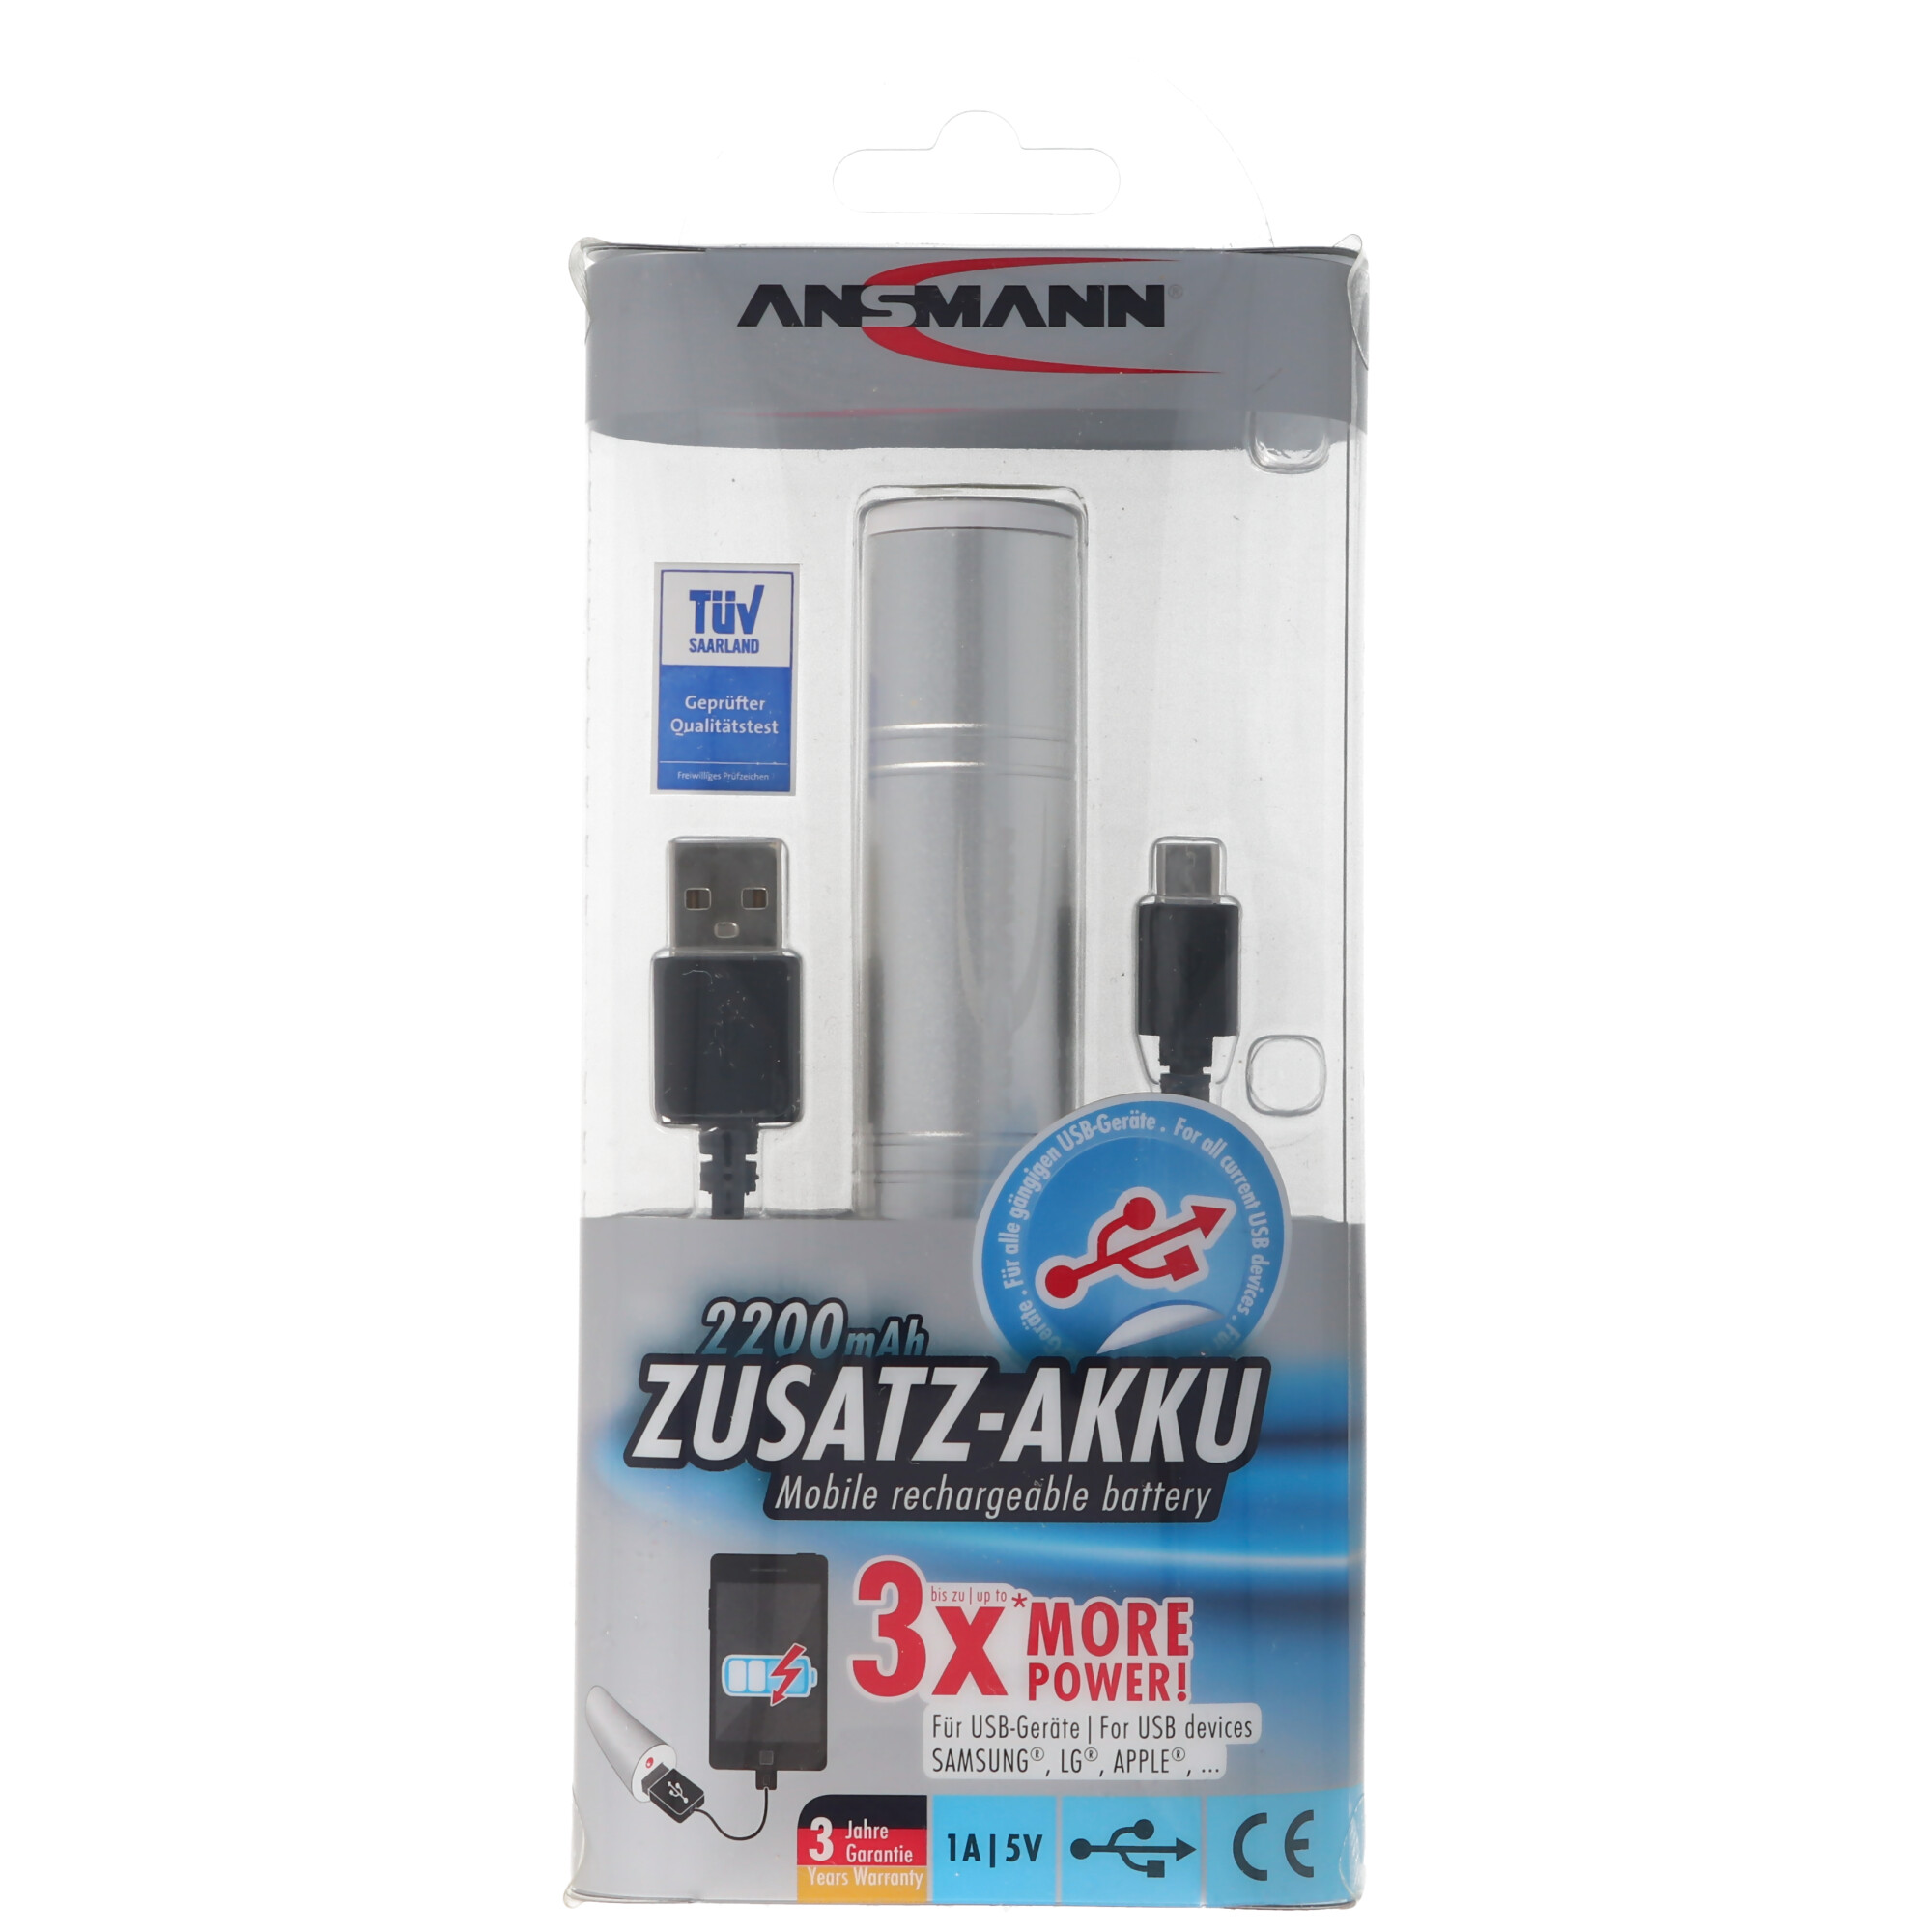 ANSMANN 1700-0009 Powerbank 2200mAh externer Zusatz-Akku für Smartphones und weitere USB Geräte